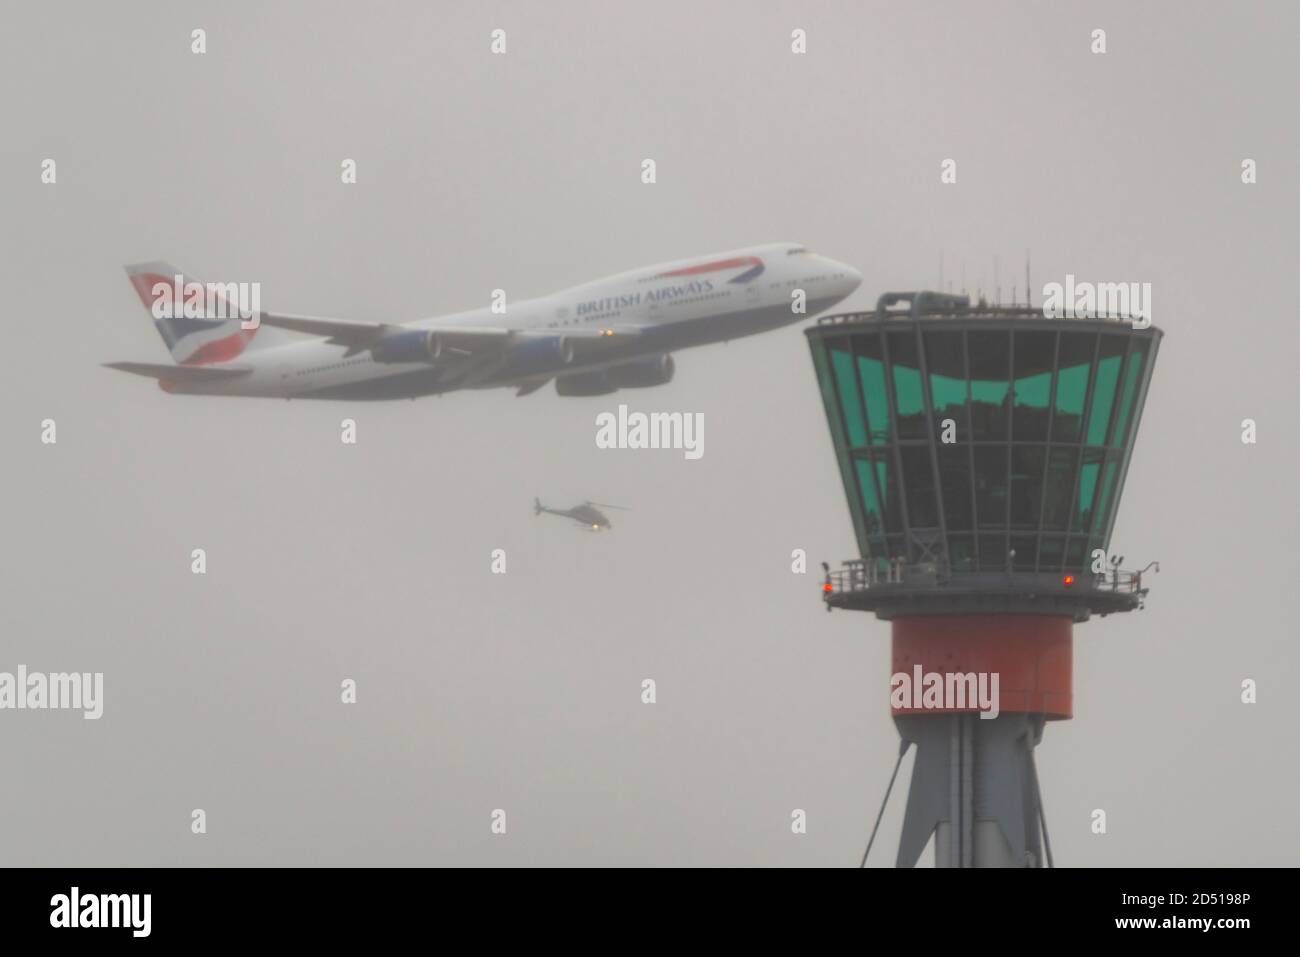 Giornata di addio per British Airways Boeing 747 aerei Jumbo Jet Airliner dopo la crisi del viaggio COVID-19. G-CIVY sorvola la torre di controllo, elicottero tv Foto Stock